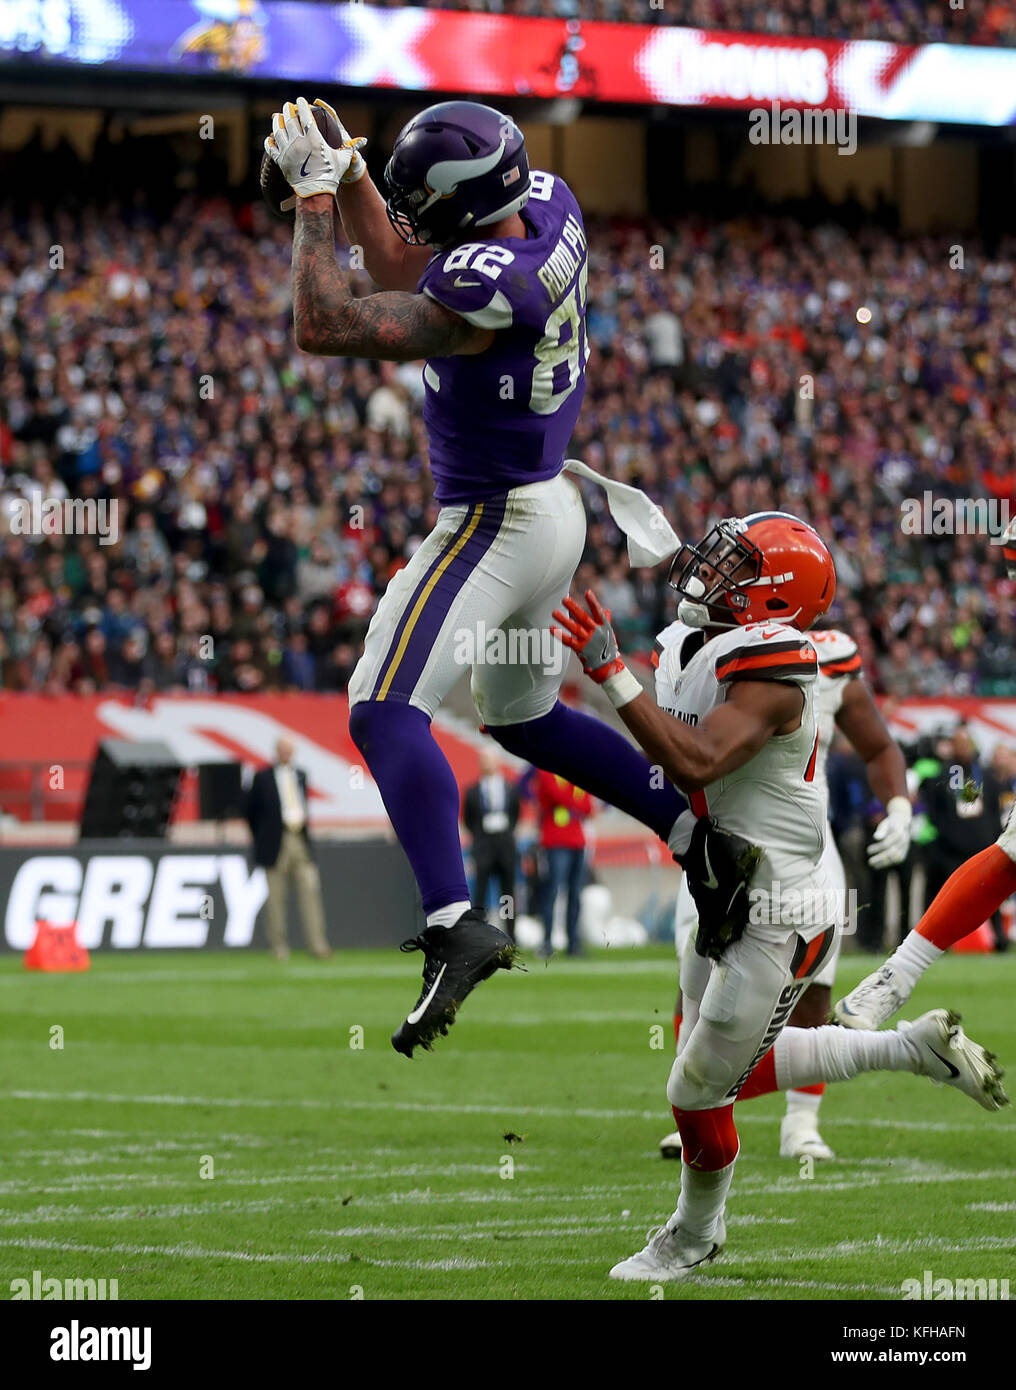 Il Minnesota Vikings' Kyle Rudolph prende la palla per un touchdown durante la partita NFL della International Series a Twickenham, Londra. Foto Stock